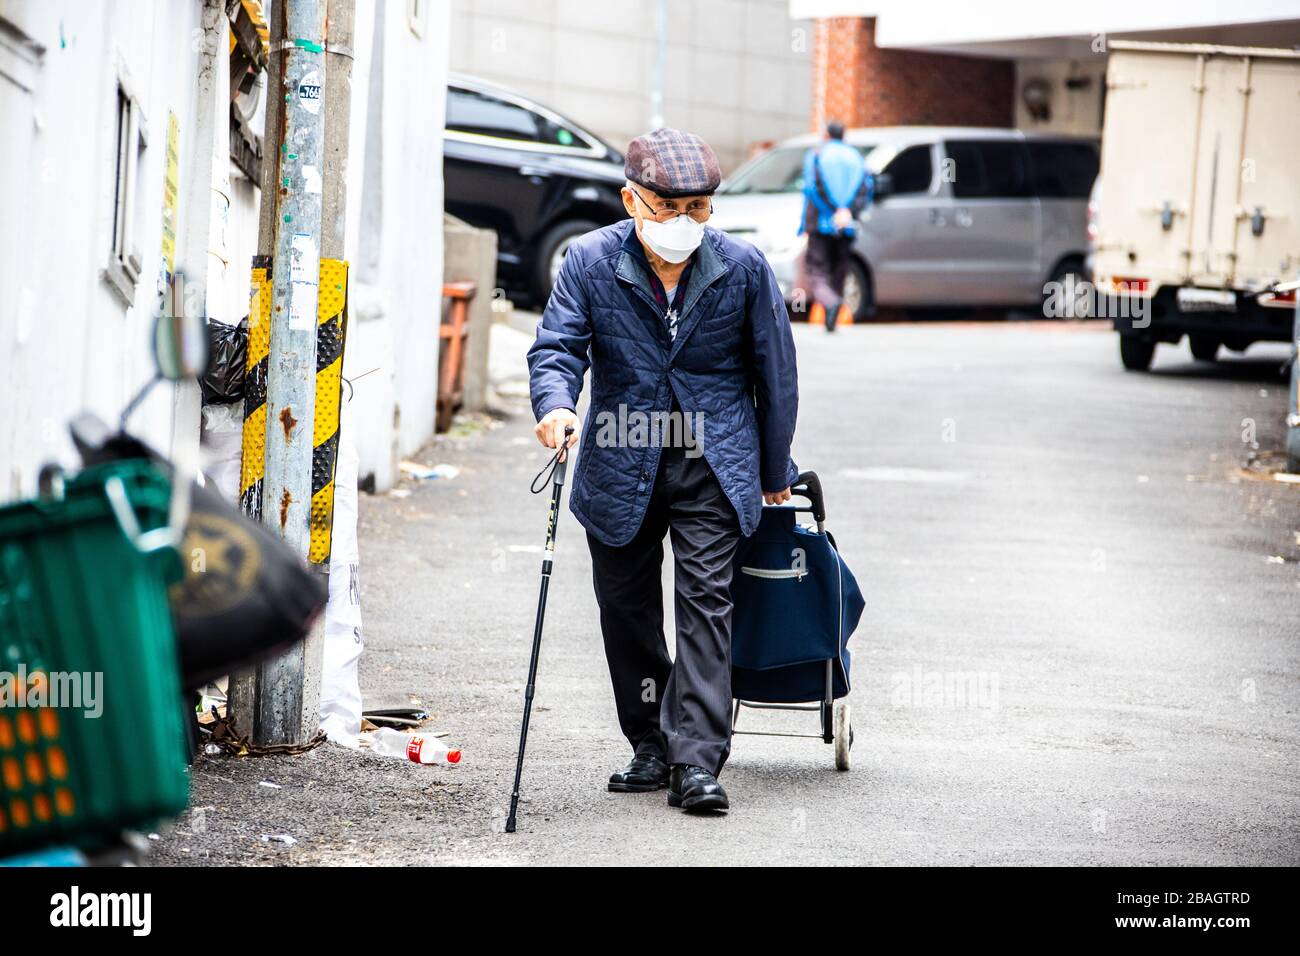 Homme âgé portant un masque protecteur pendant la pandémie de coronavirus à Séoul, en Corée du Sud Banque D'Images